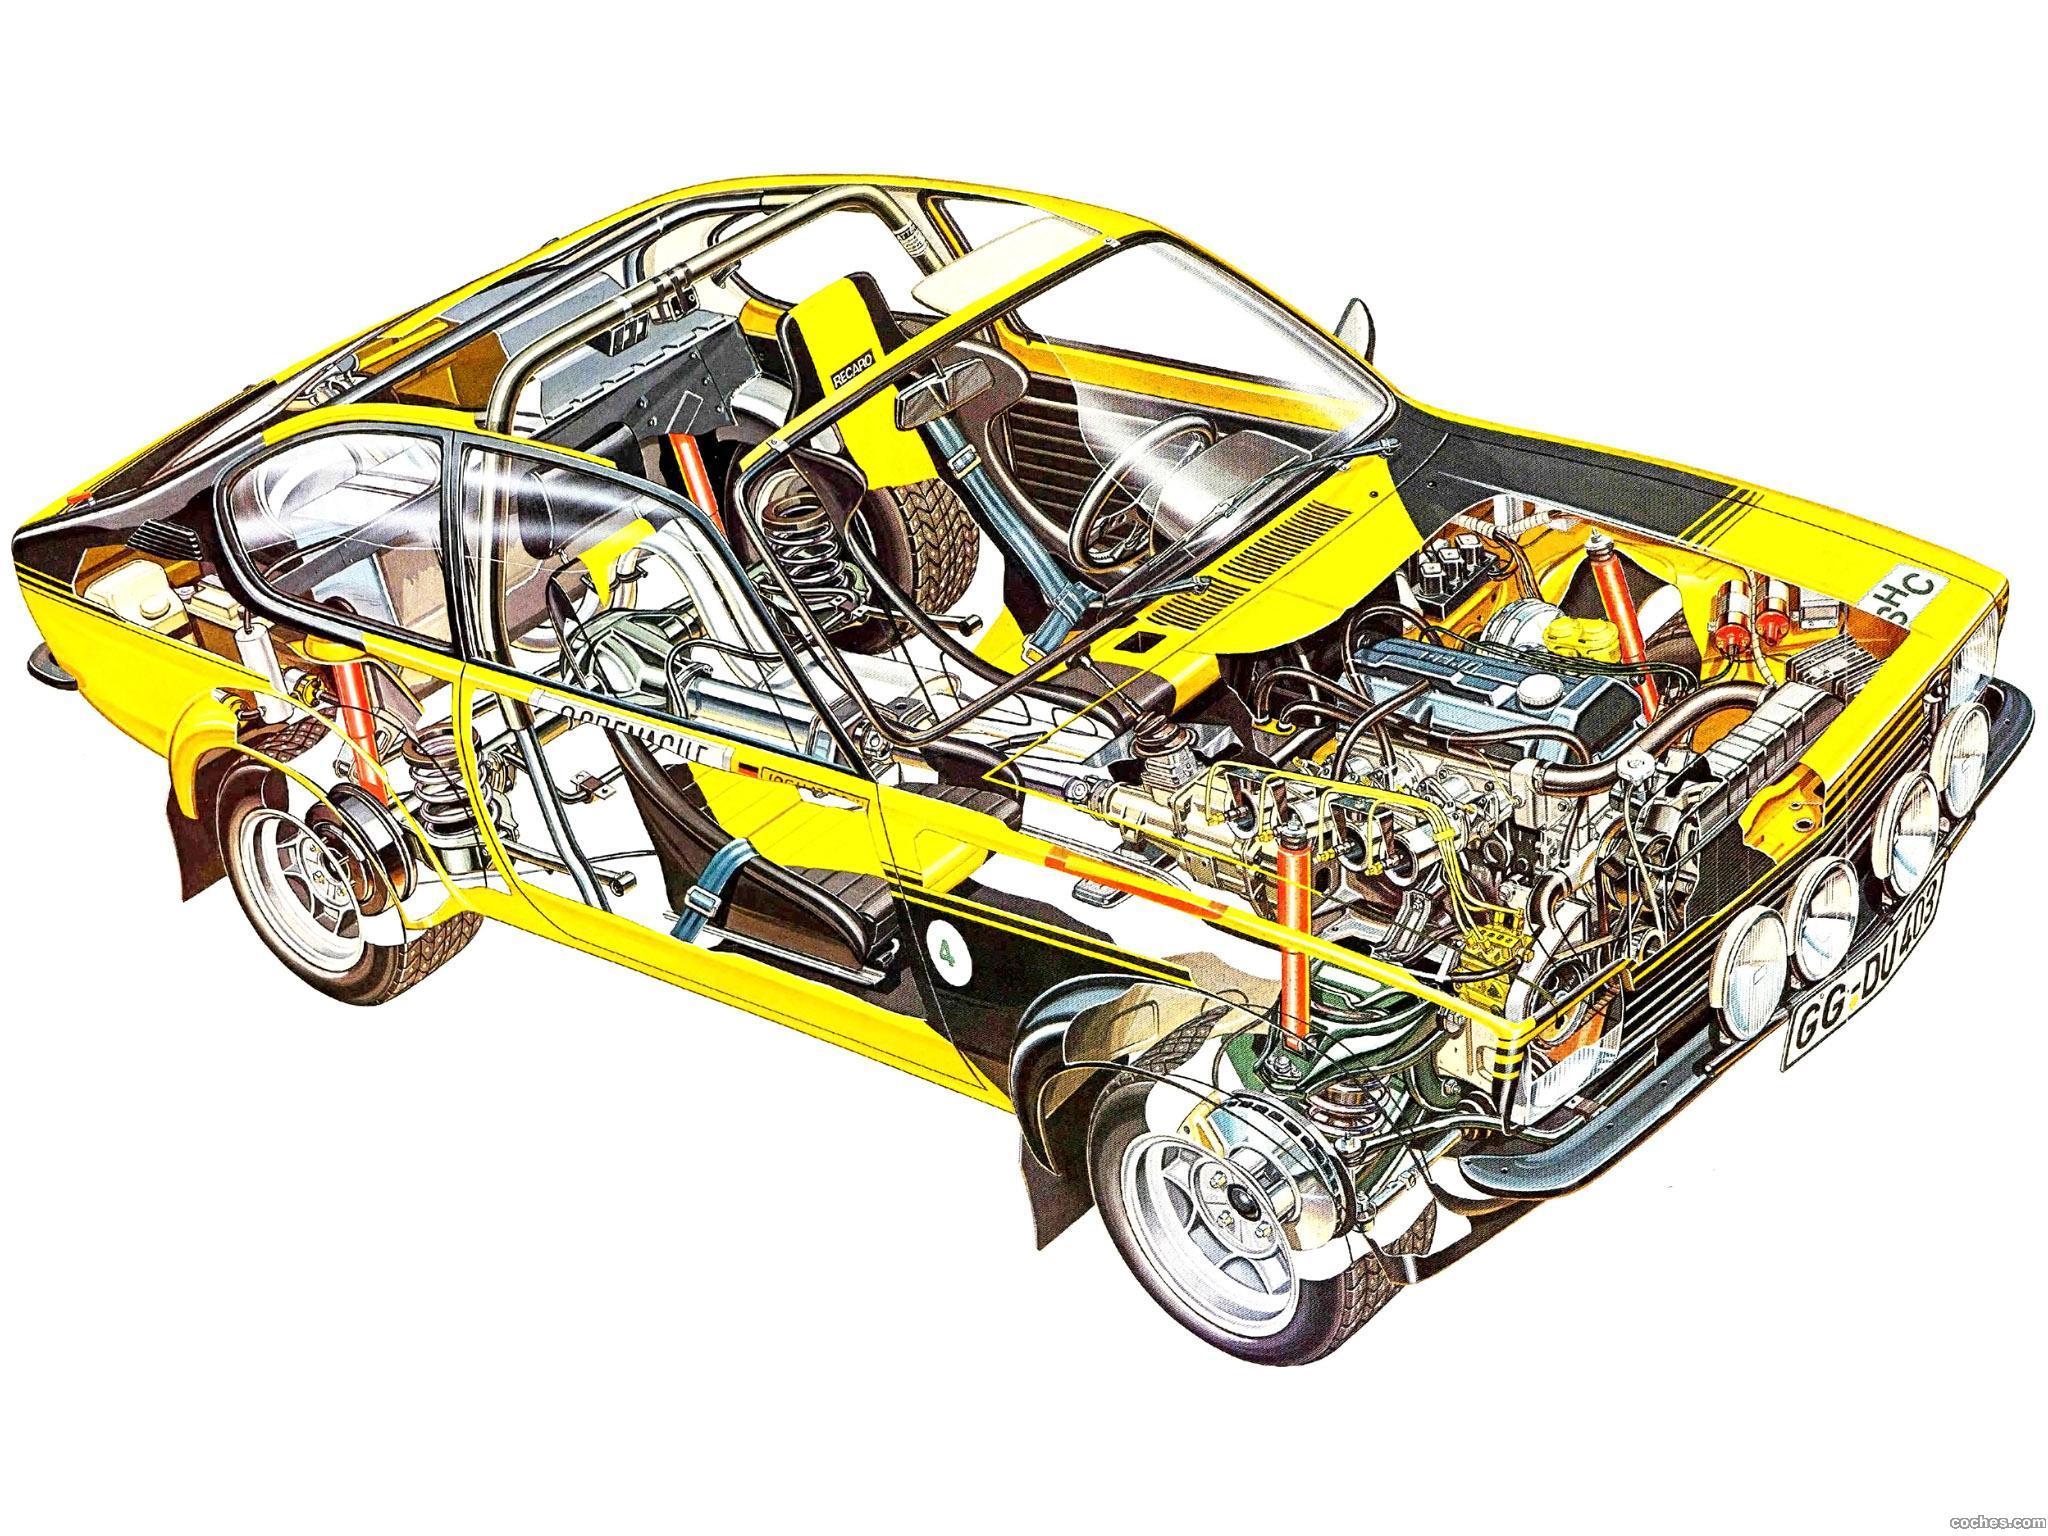 opel_kadett-gt-e-rallye-car-c-1976-77_r1.jpg